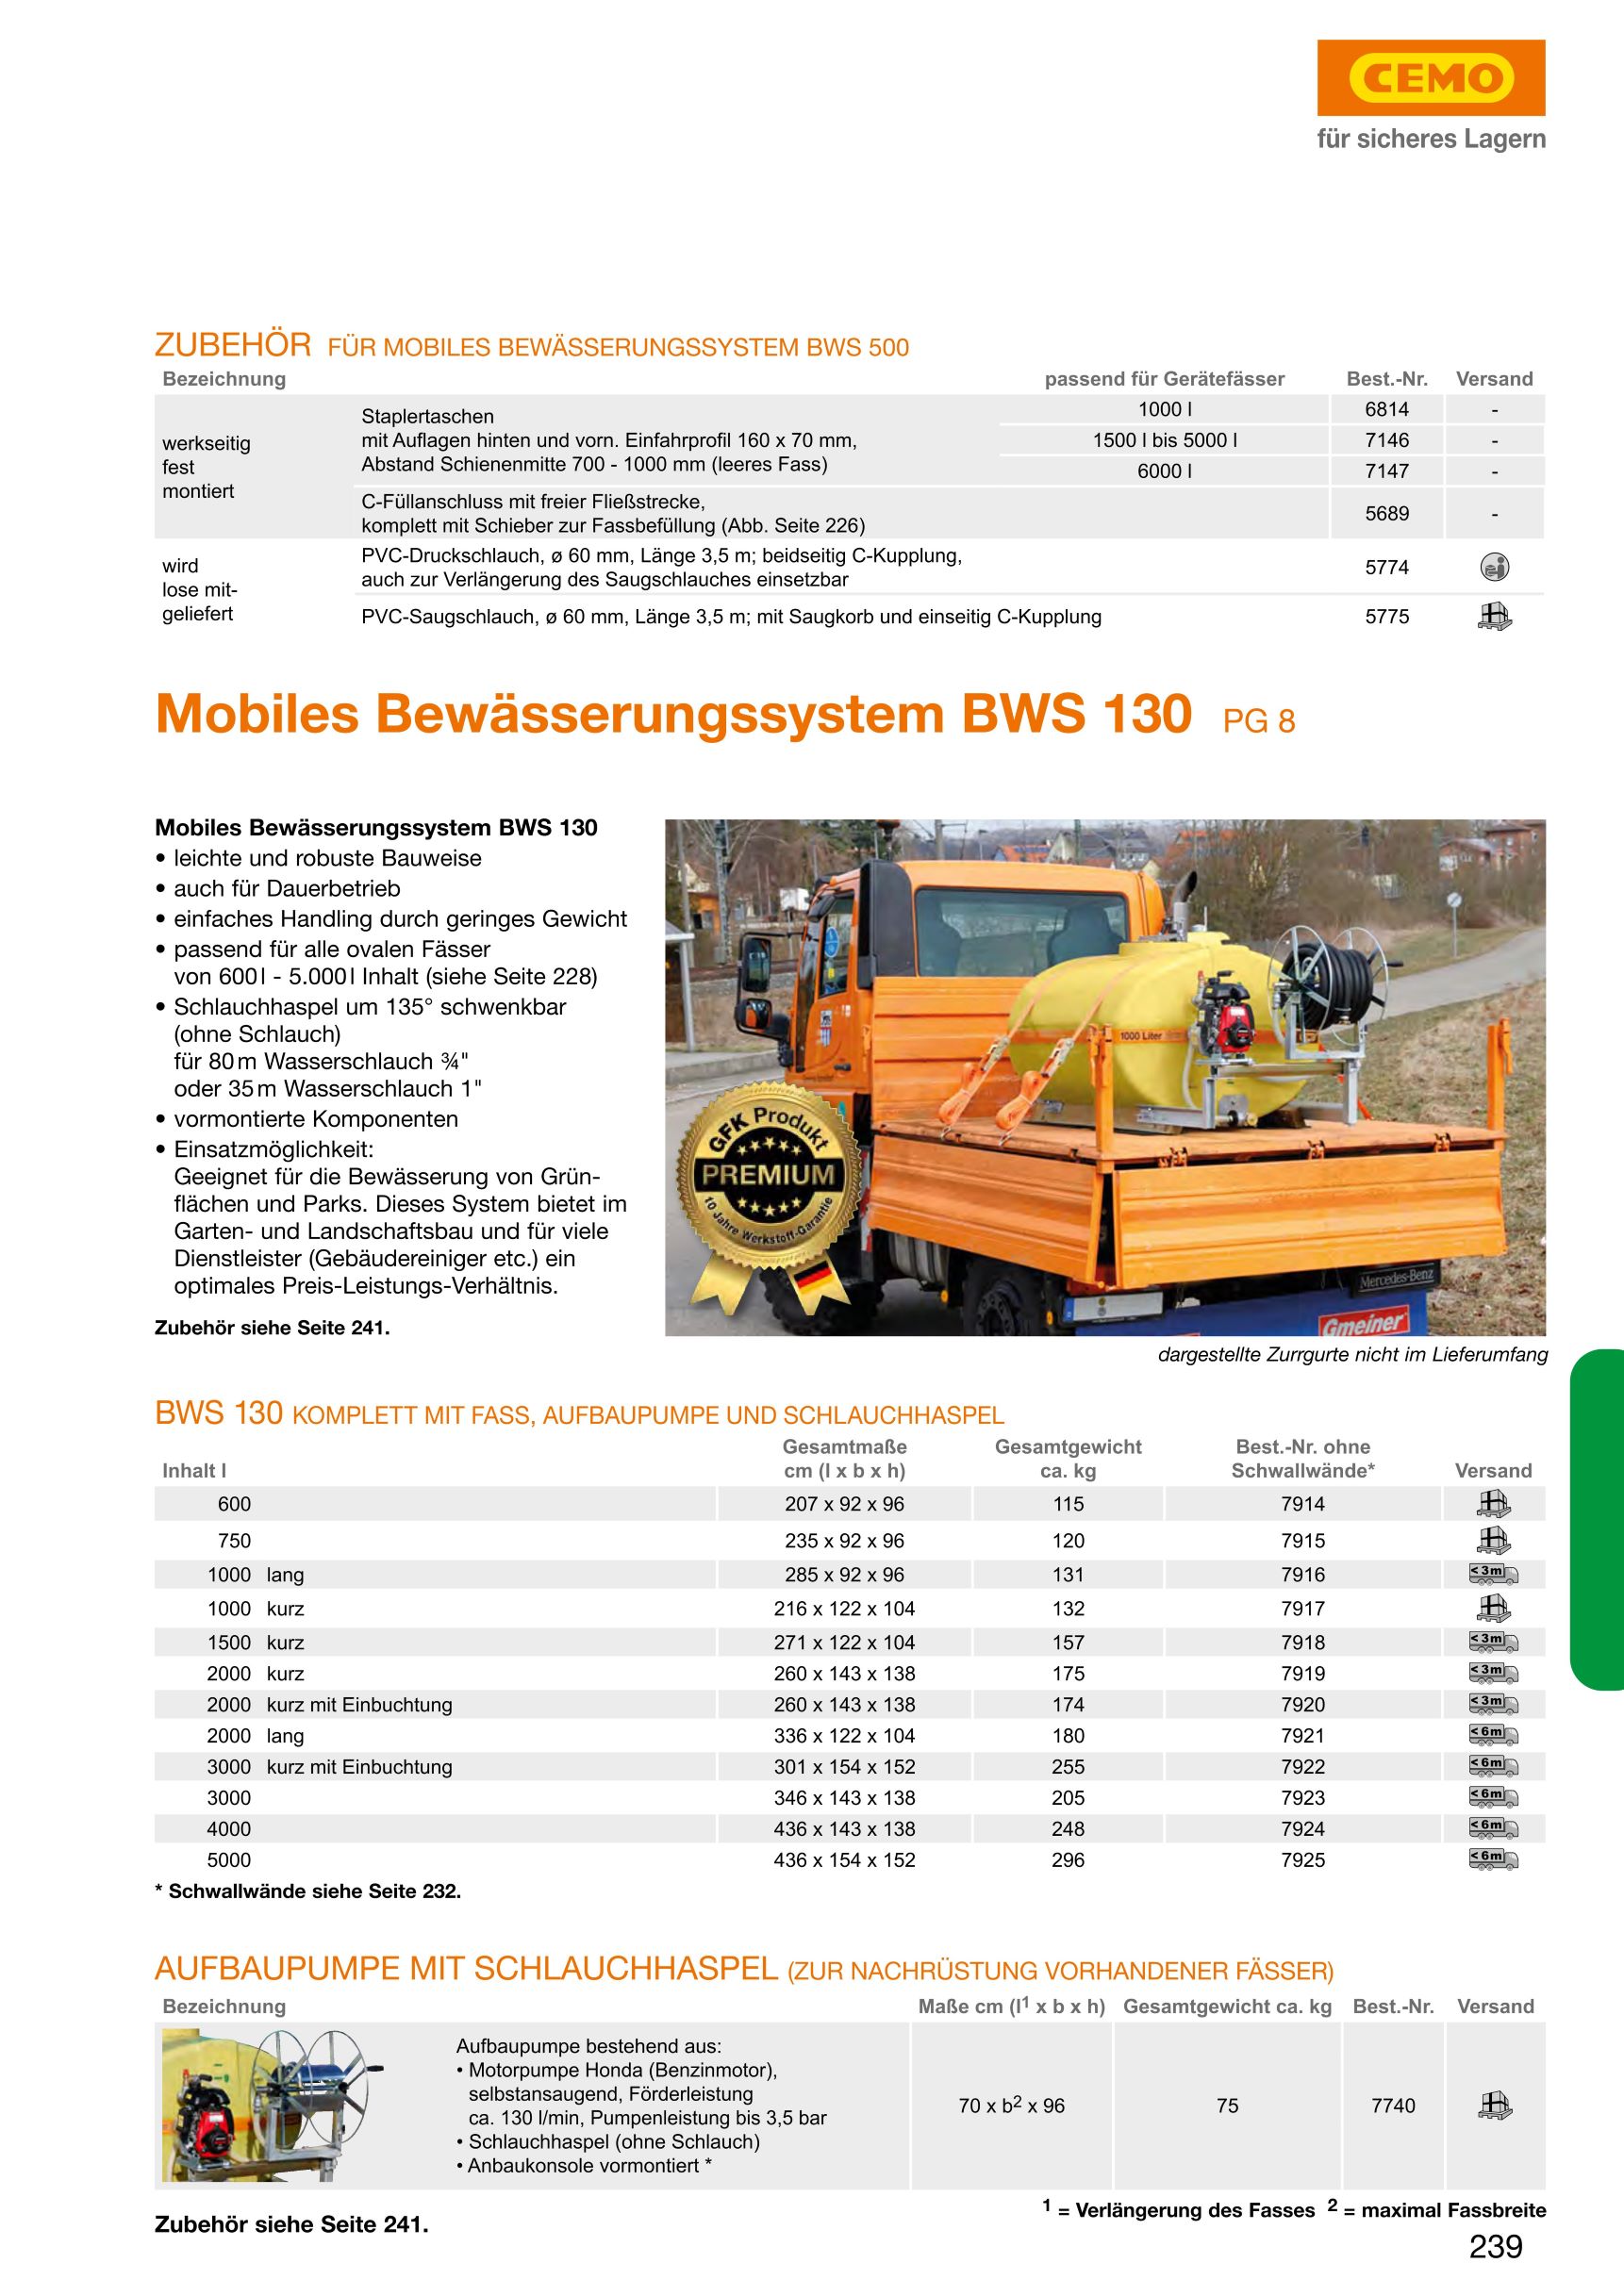 CEMO Mobiles Bewässerungssystem BWS 130, 1000 l lang, Motorpumpe - 7916